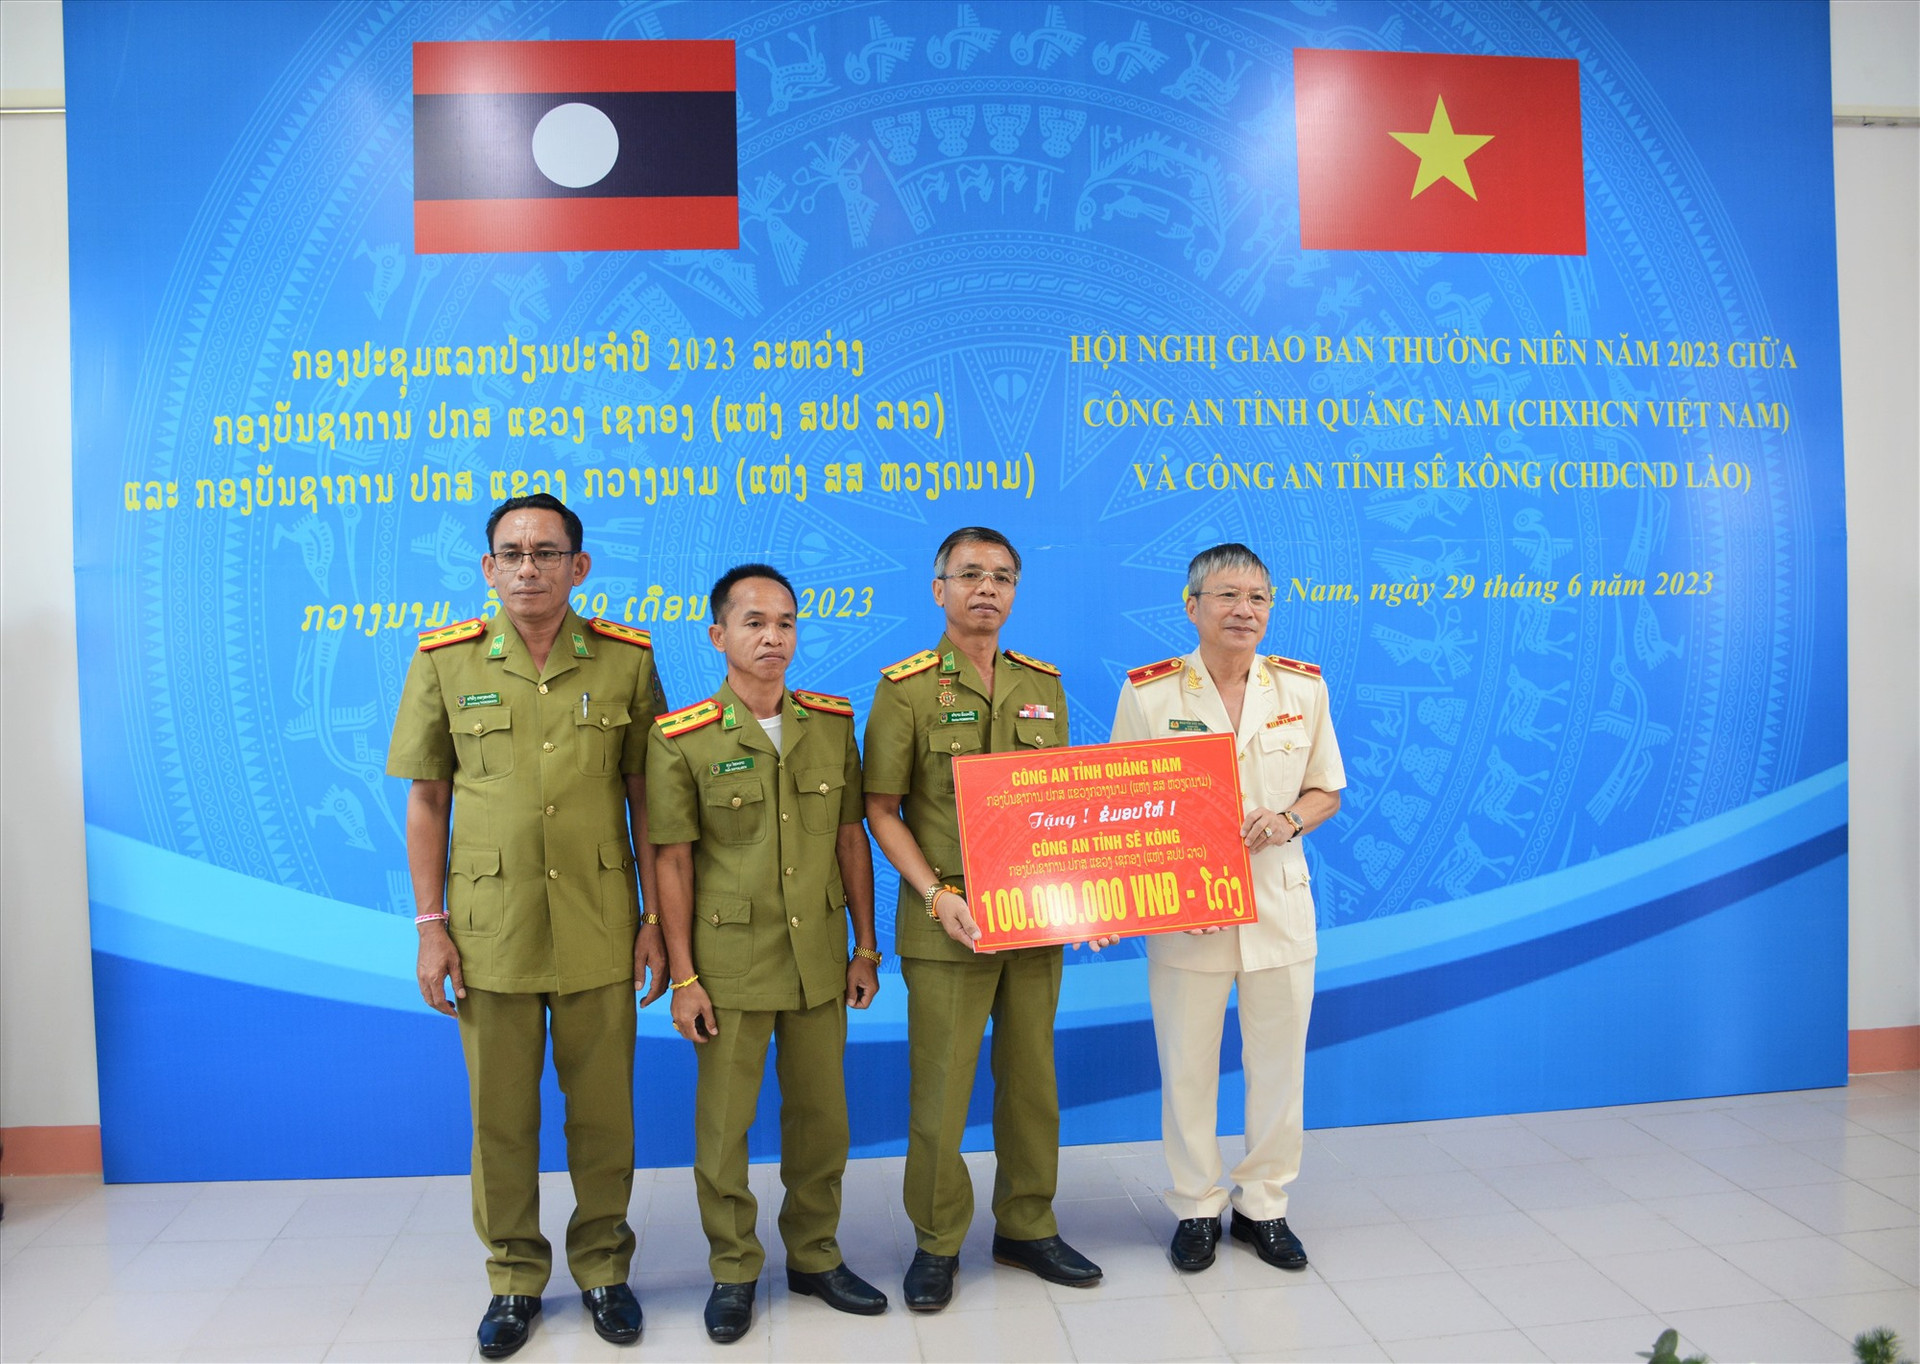 Thiếu tướng Nguyễn Đức Dũng - Giám đốc Công an tỉnh Quảng Nam trao tặng 100 triệu đồng cho Công an tỉnh Sê Kông. Ảnh: M.T